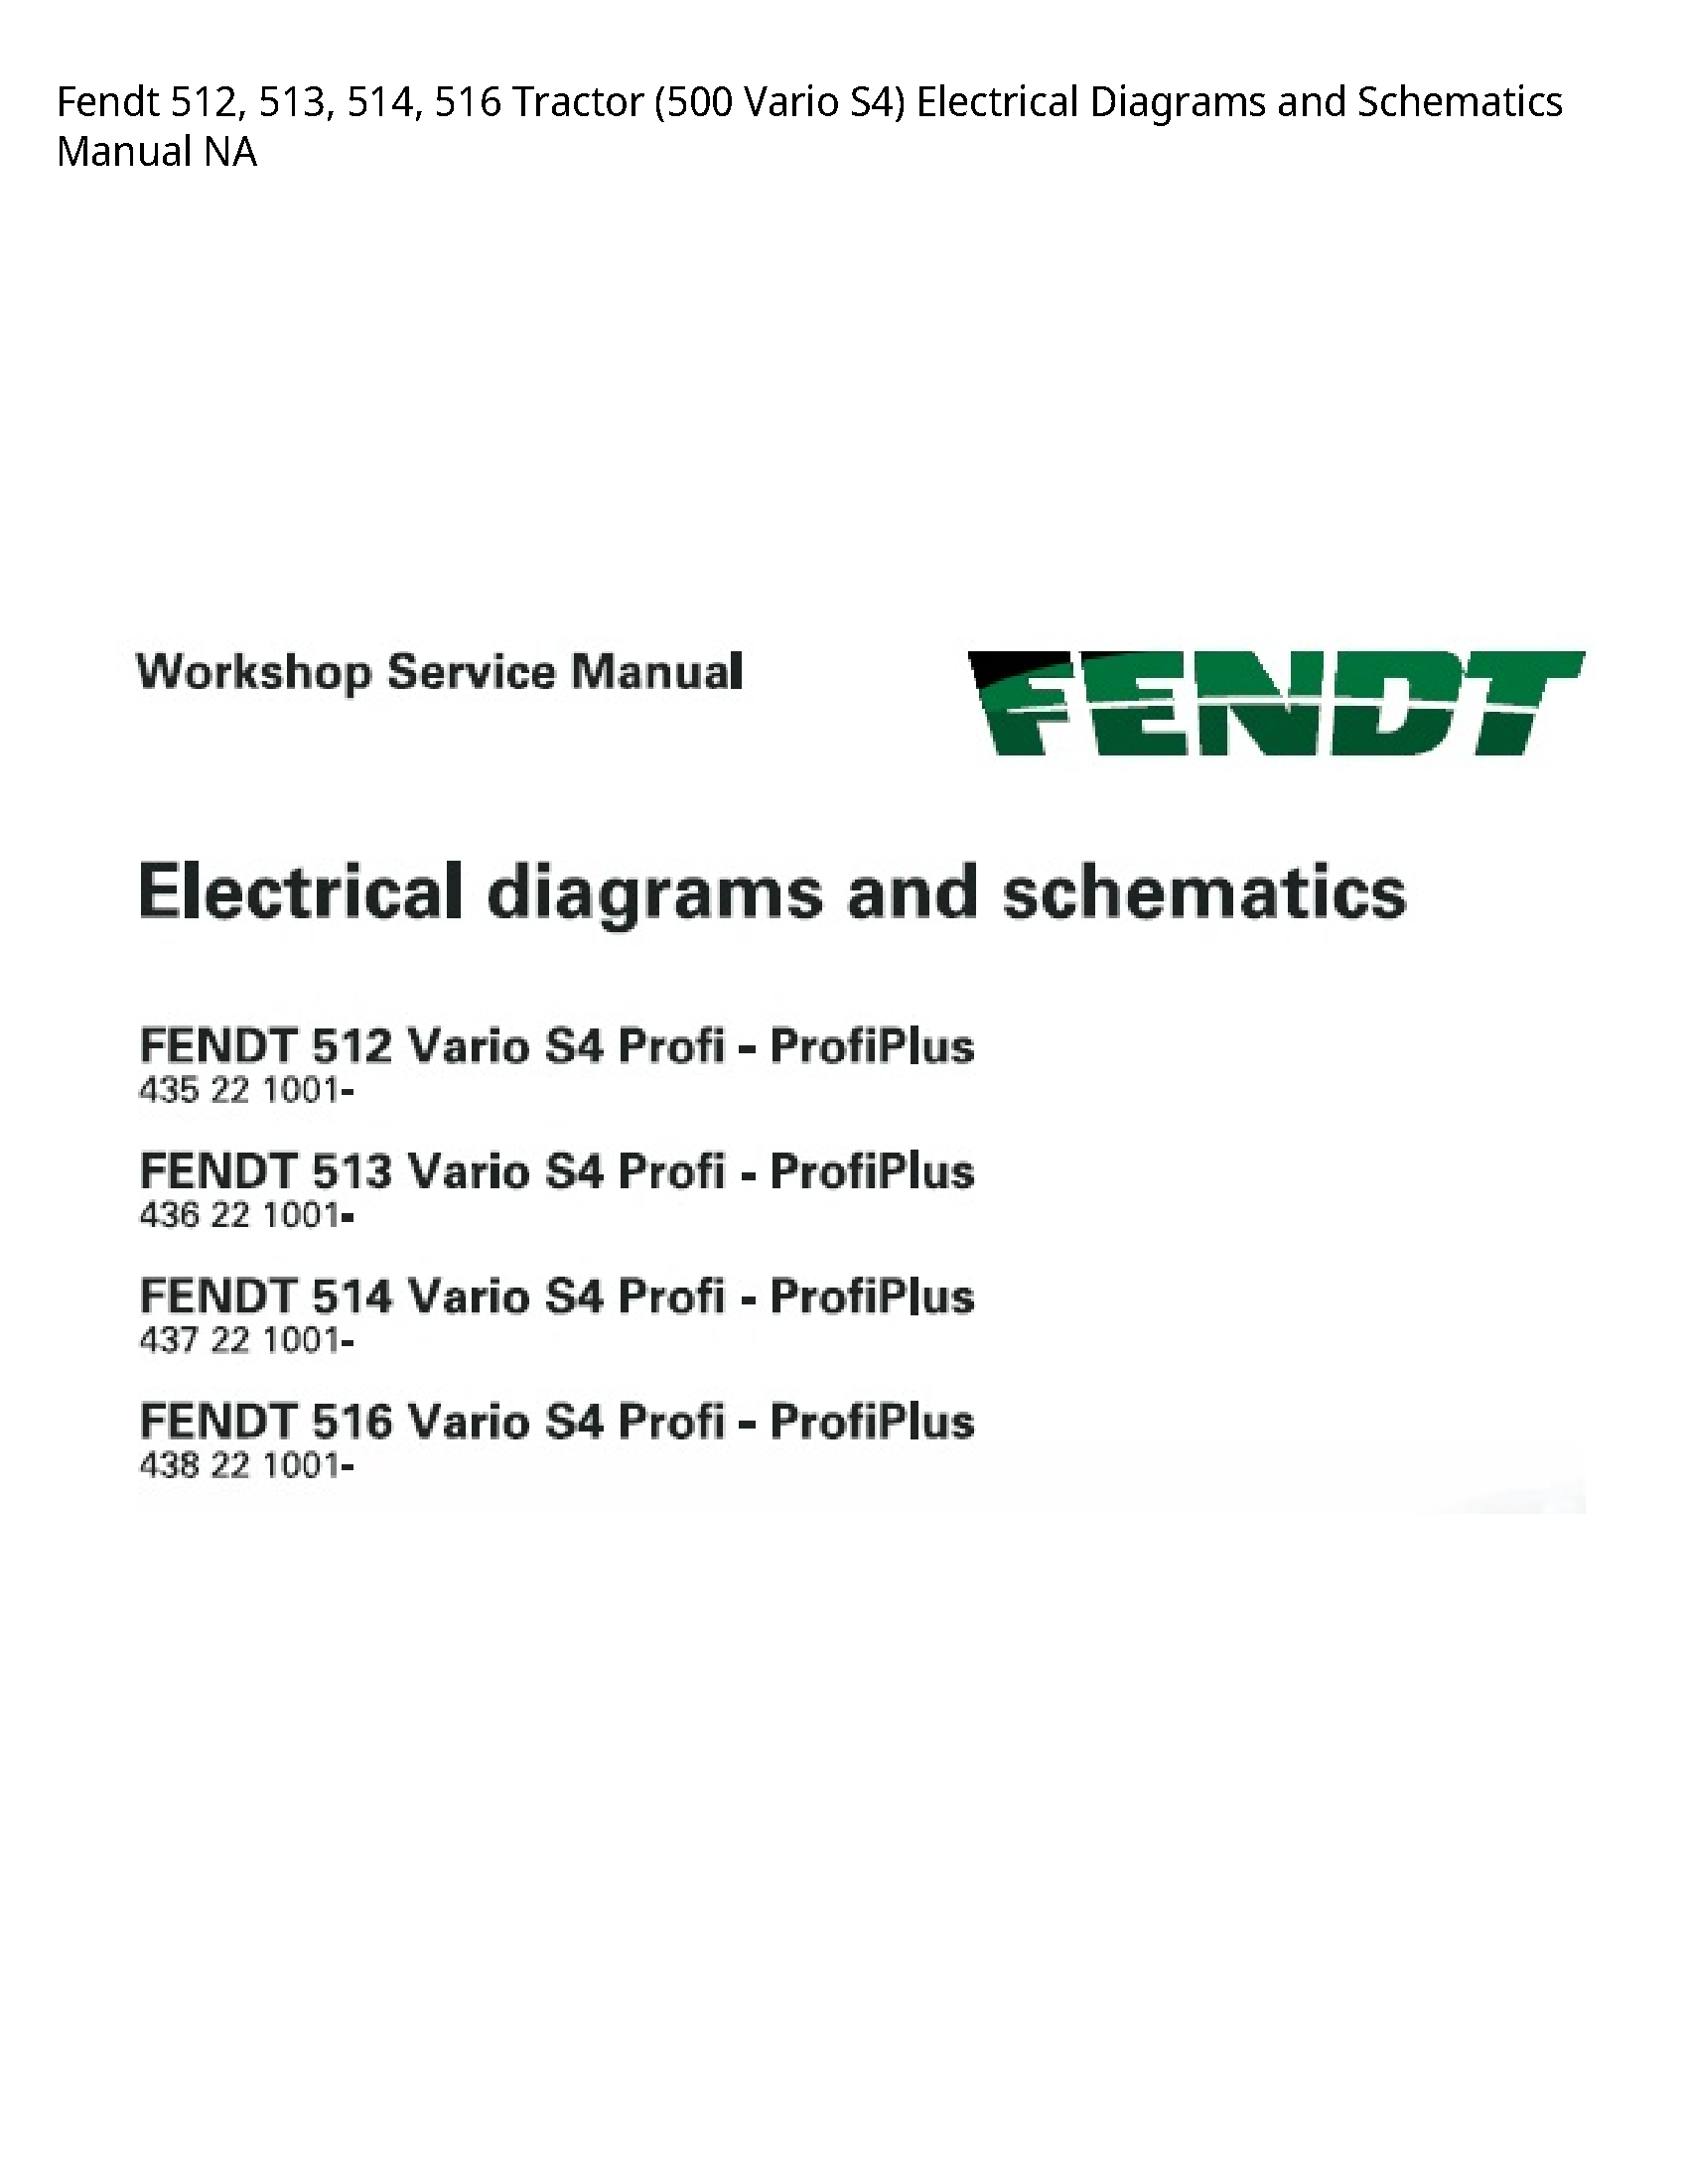 Fendt 512 Tractor Vario Electrical Diagrams  Schematics manual